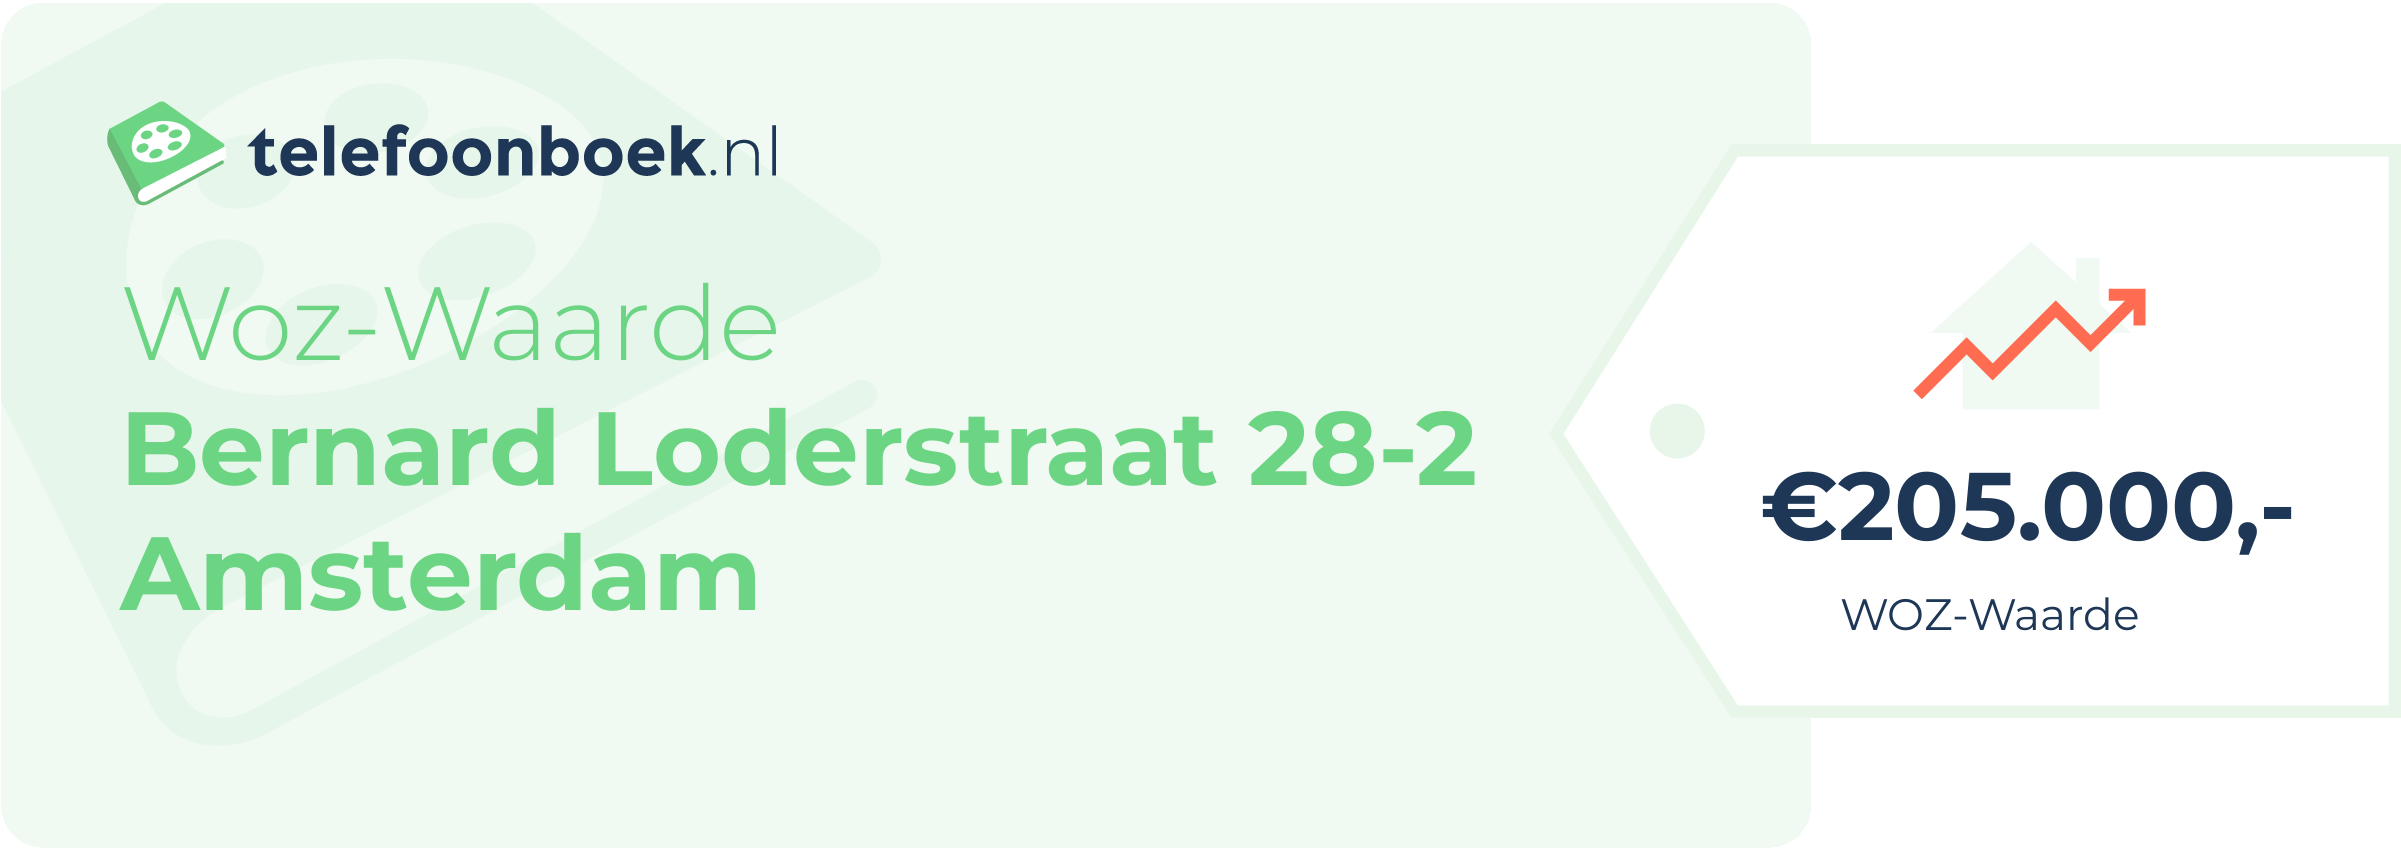 WOZ-waarde Bernard Loderstraat 28-2 Amsterdam